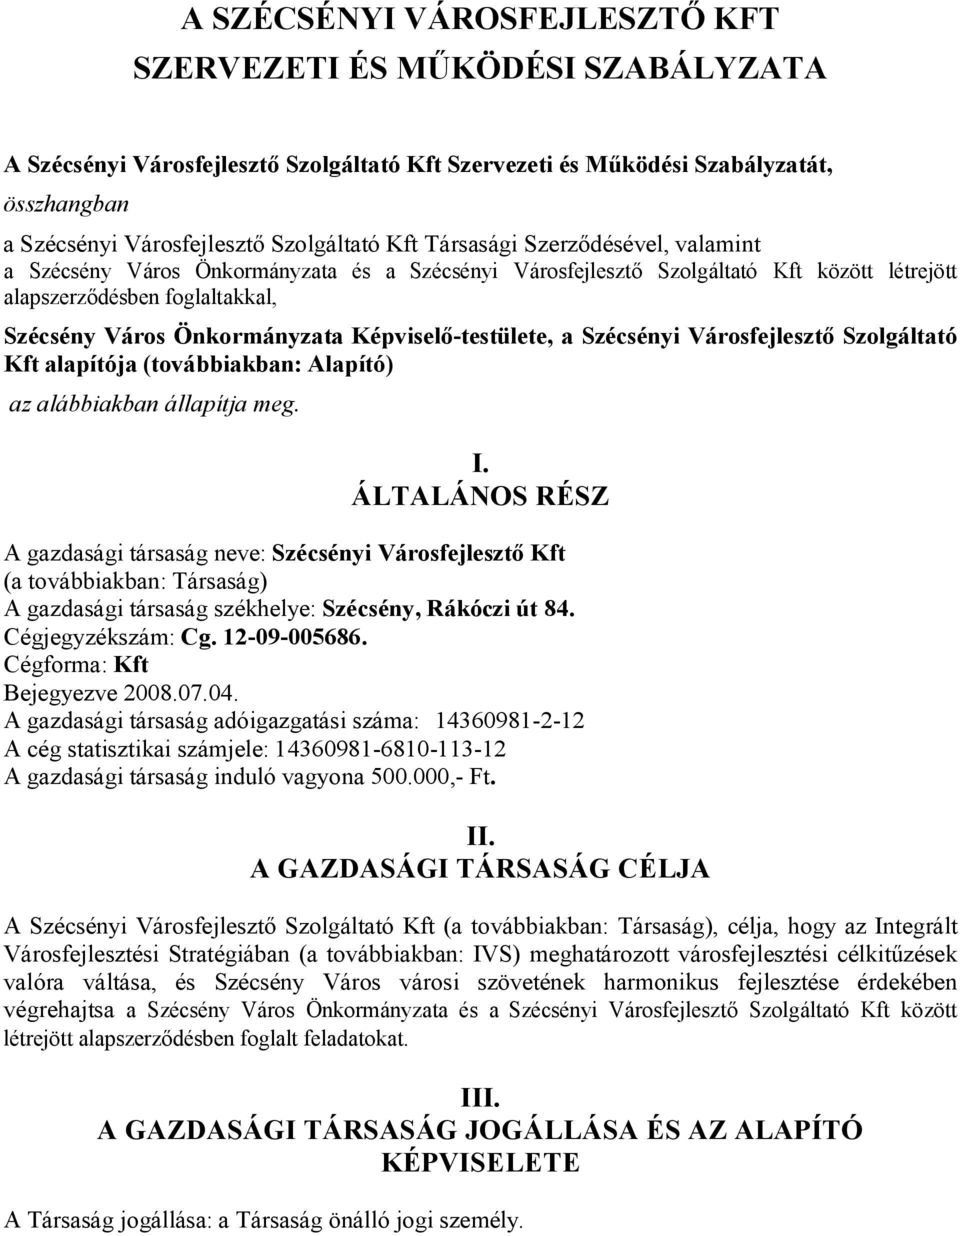 Képviselő-testülete, a Szécsényi Városfejlesztő Szolgáltató Kft alapítója (továbbiakban: Alapító) az alábbiakban állapítja meg. I.